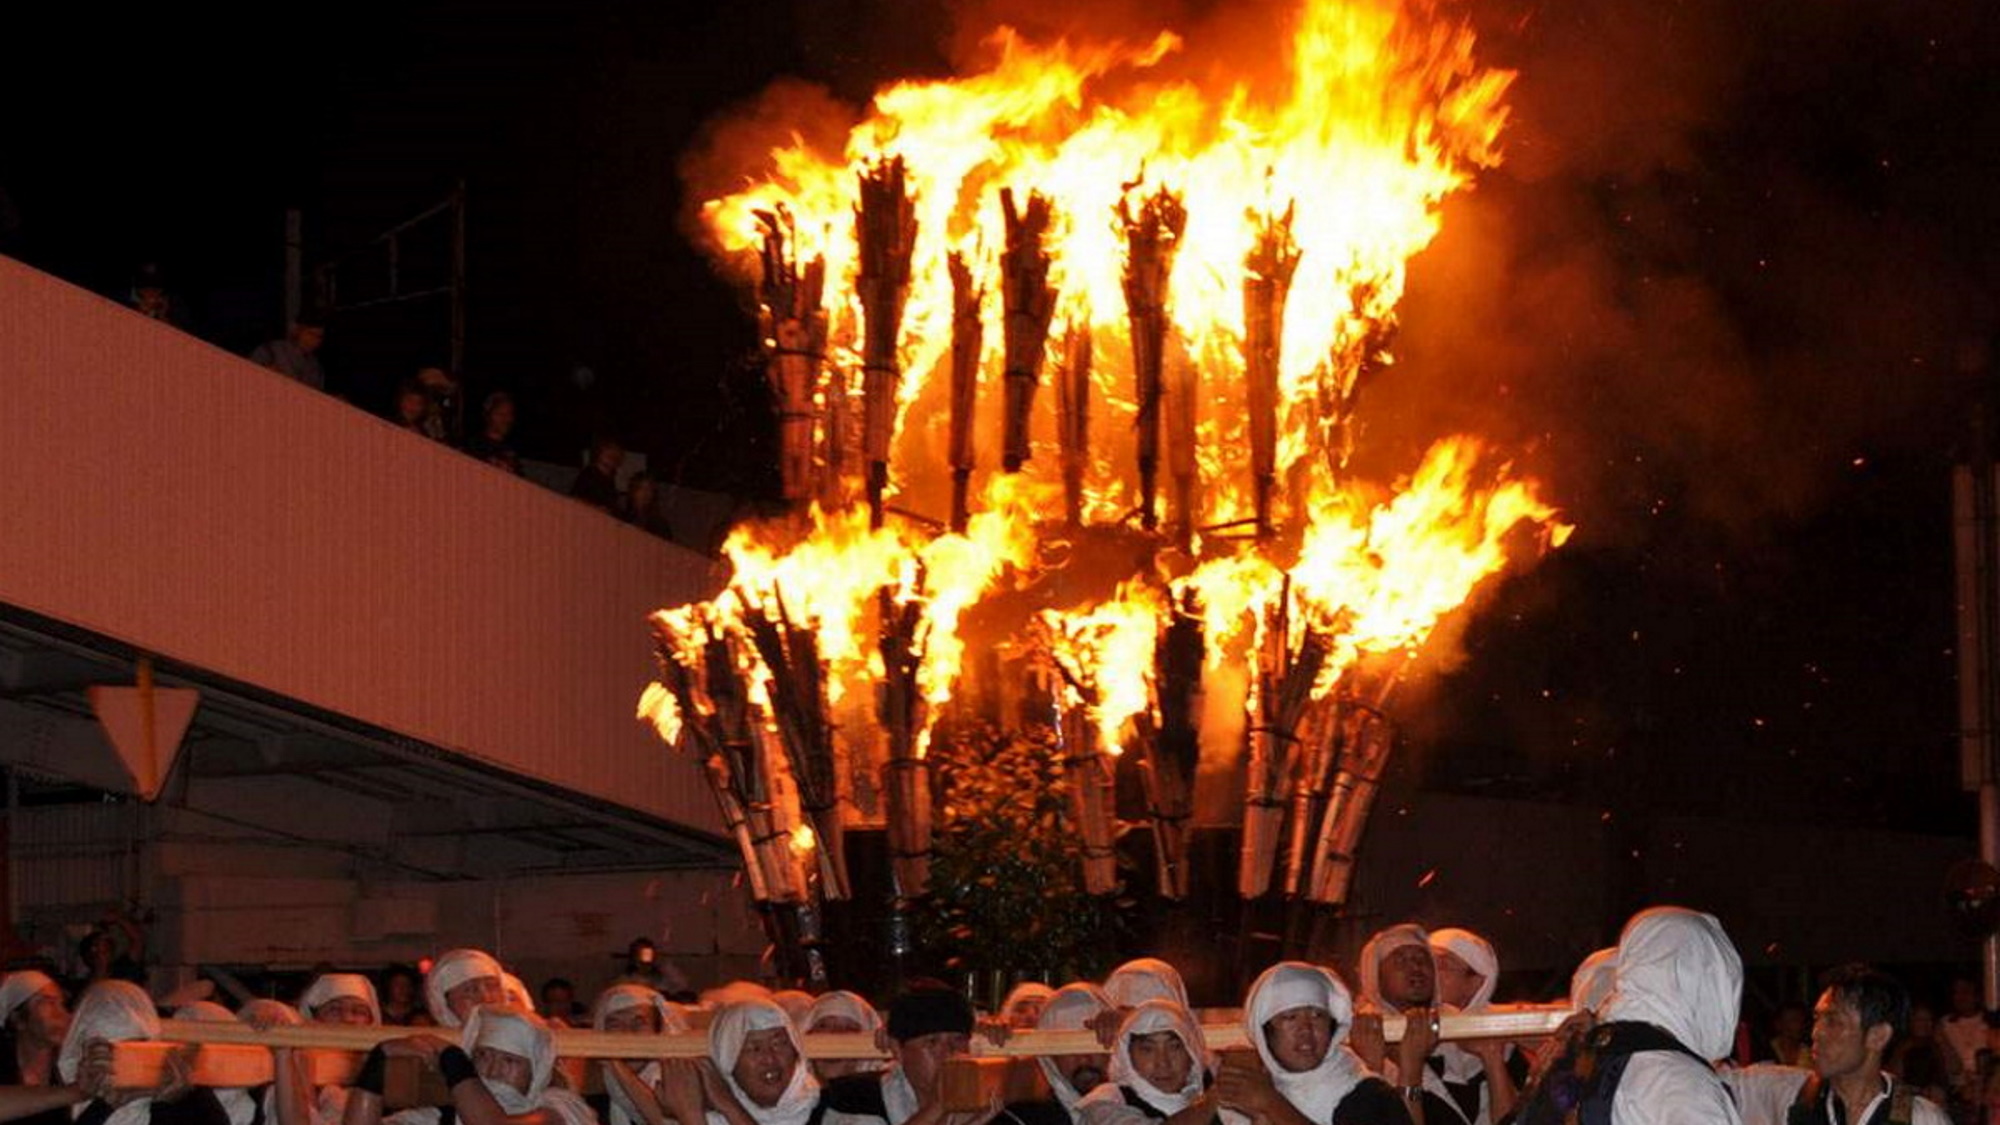 【僧兵まつり・火炎みこし】僧兵姿の人々によって運ばれる火炎みこしが温泉街を赤い灯りで照らします。